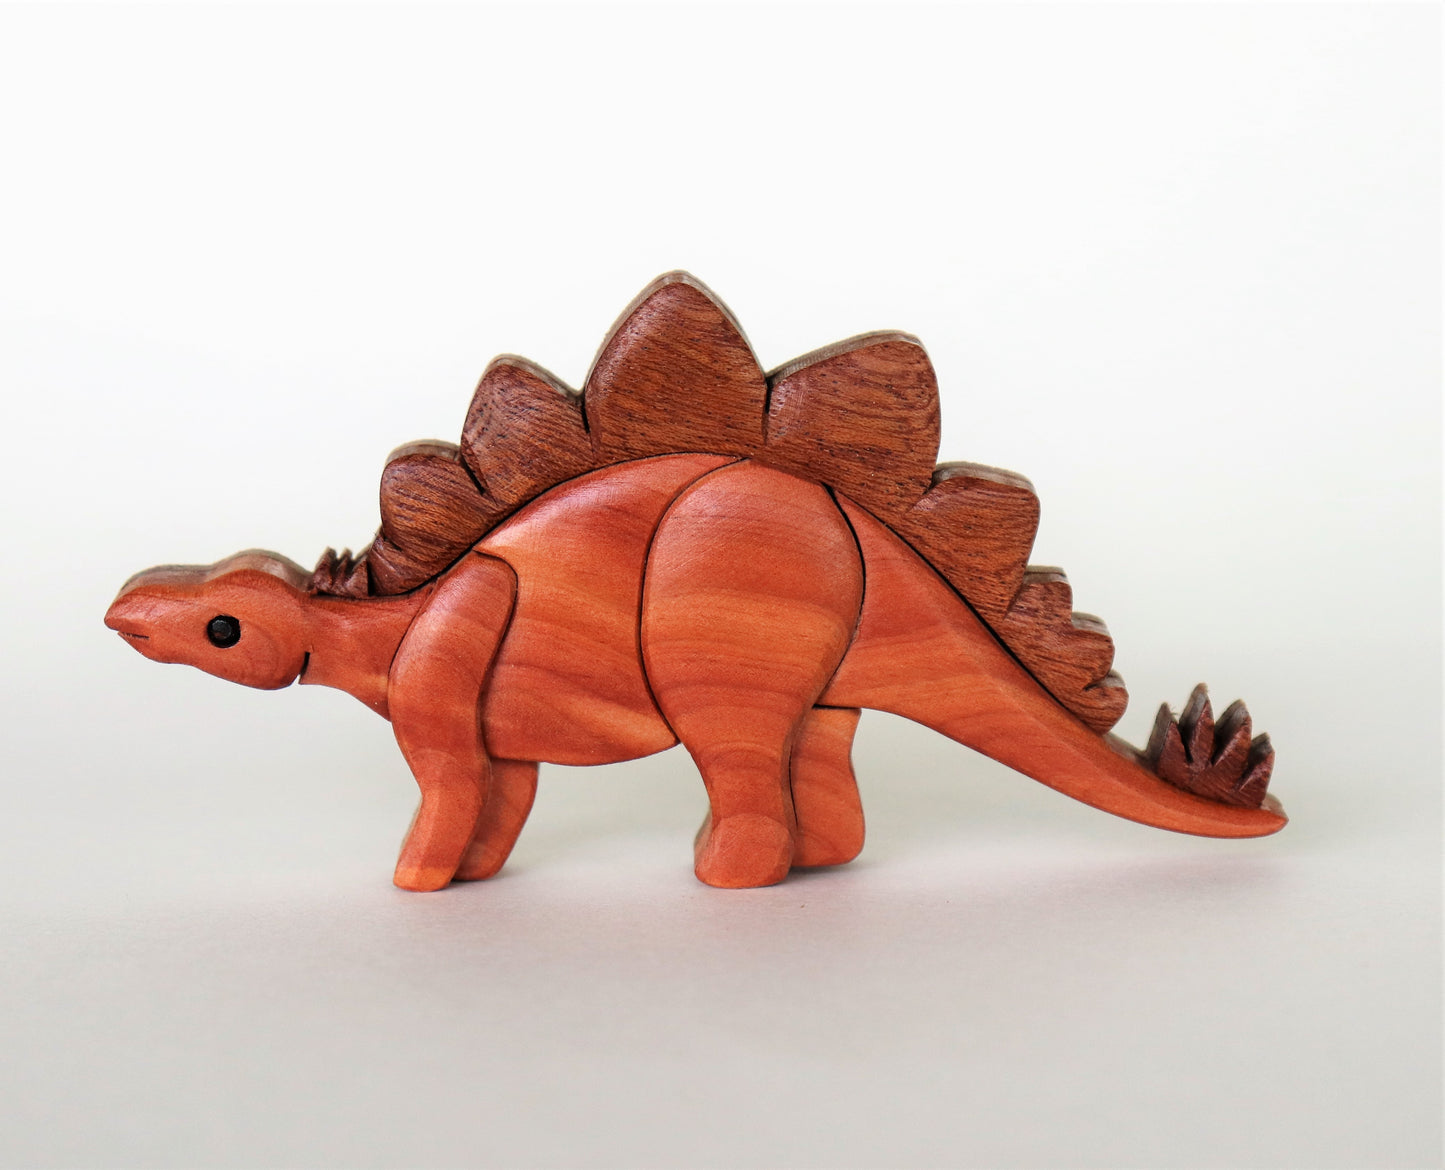 Stegosaurus Dinosaur Magnet / Ornament